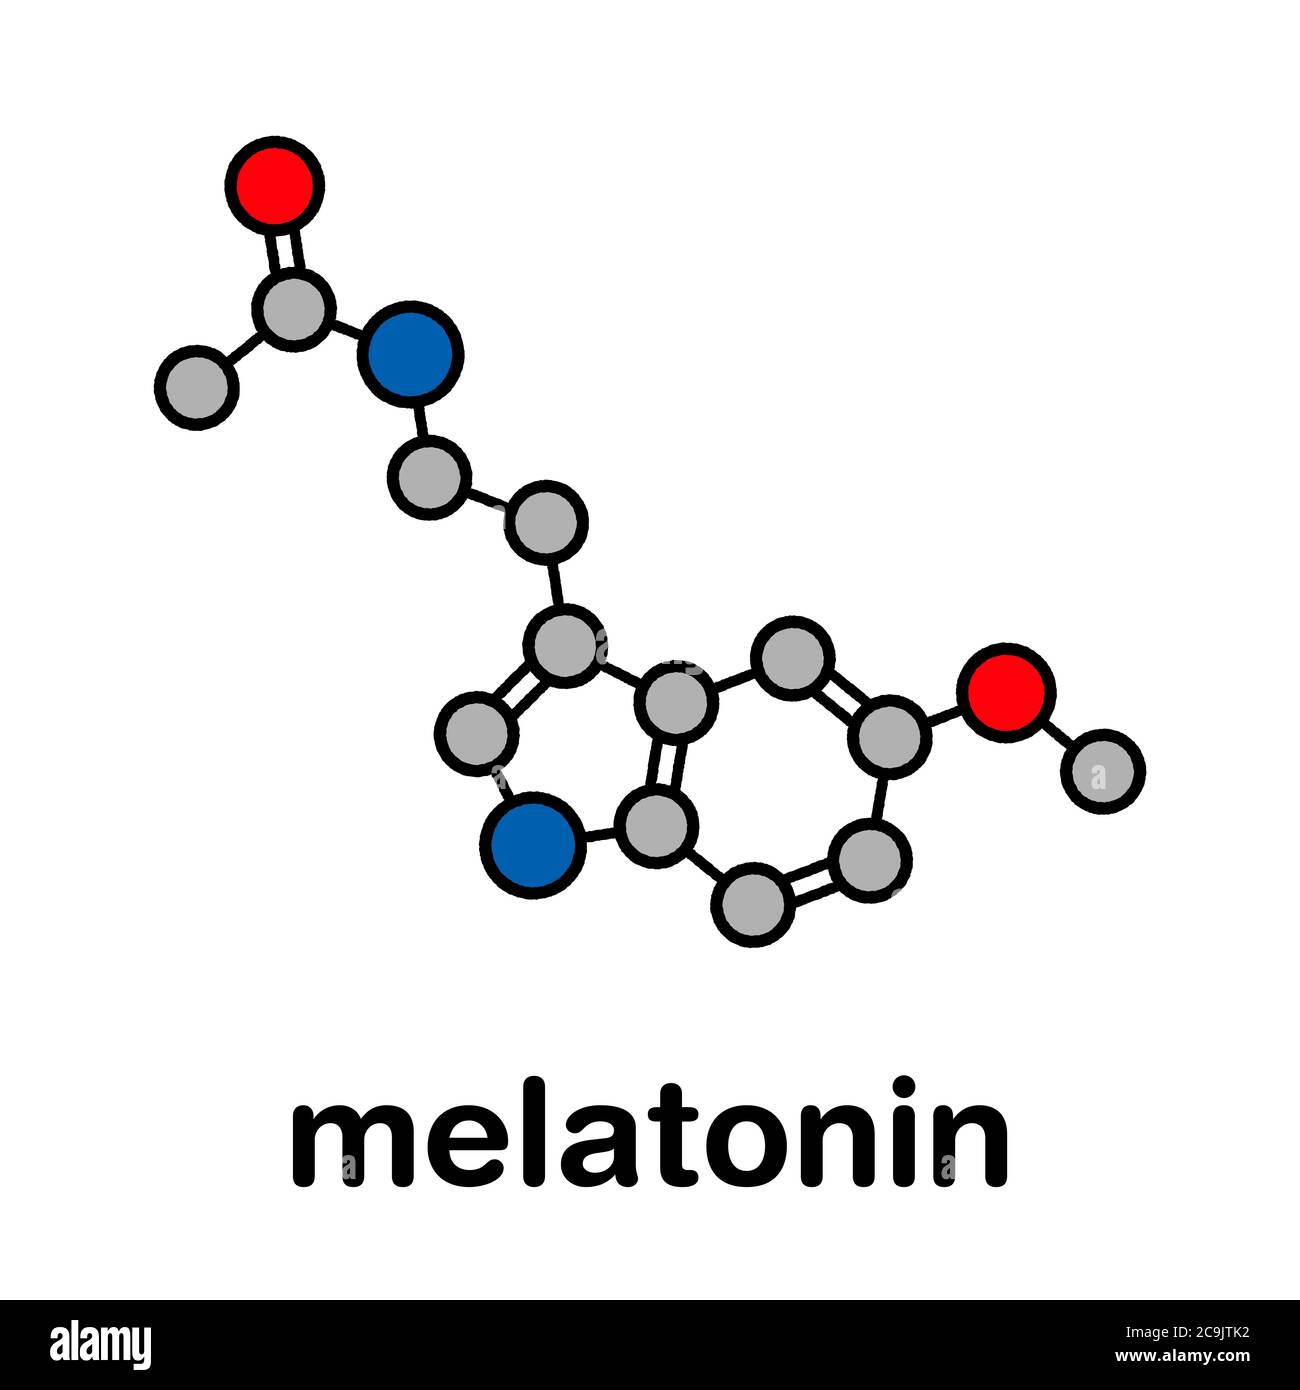 Melatonin Hormonmolekül. Beim Menschen spielt es eine Rolle bei der zirkadianen Rhythmus-Synchronisation. Stilisierte Skelettformel (chemische Struktur). Atome sind Stockfoto